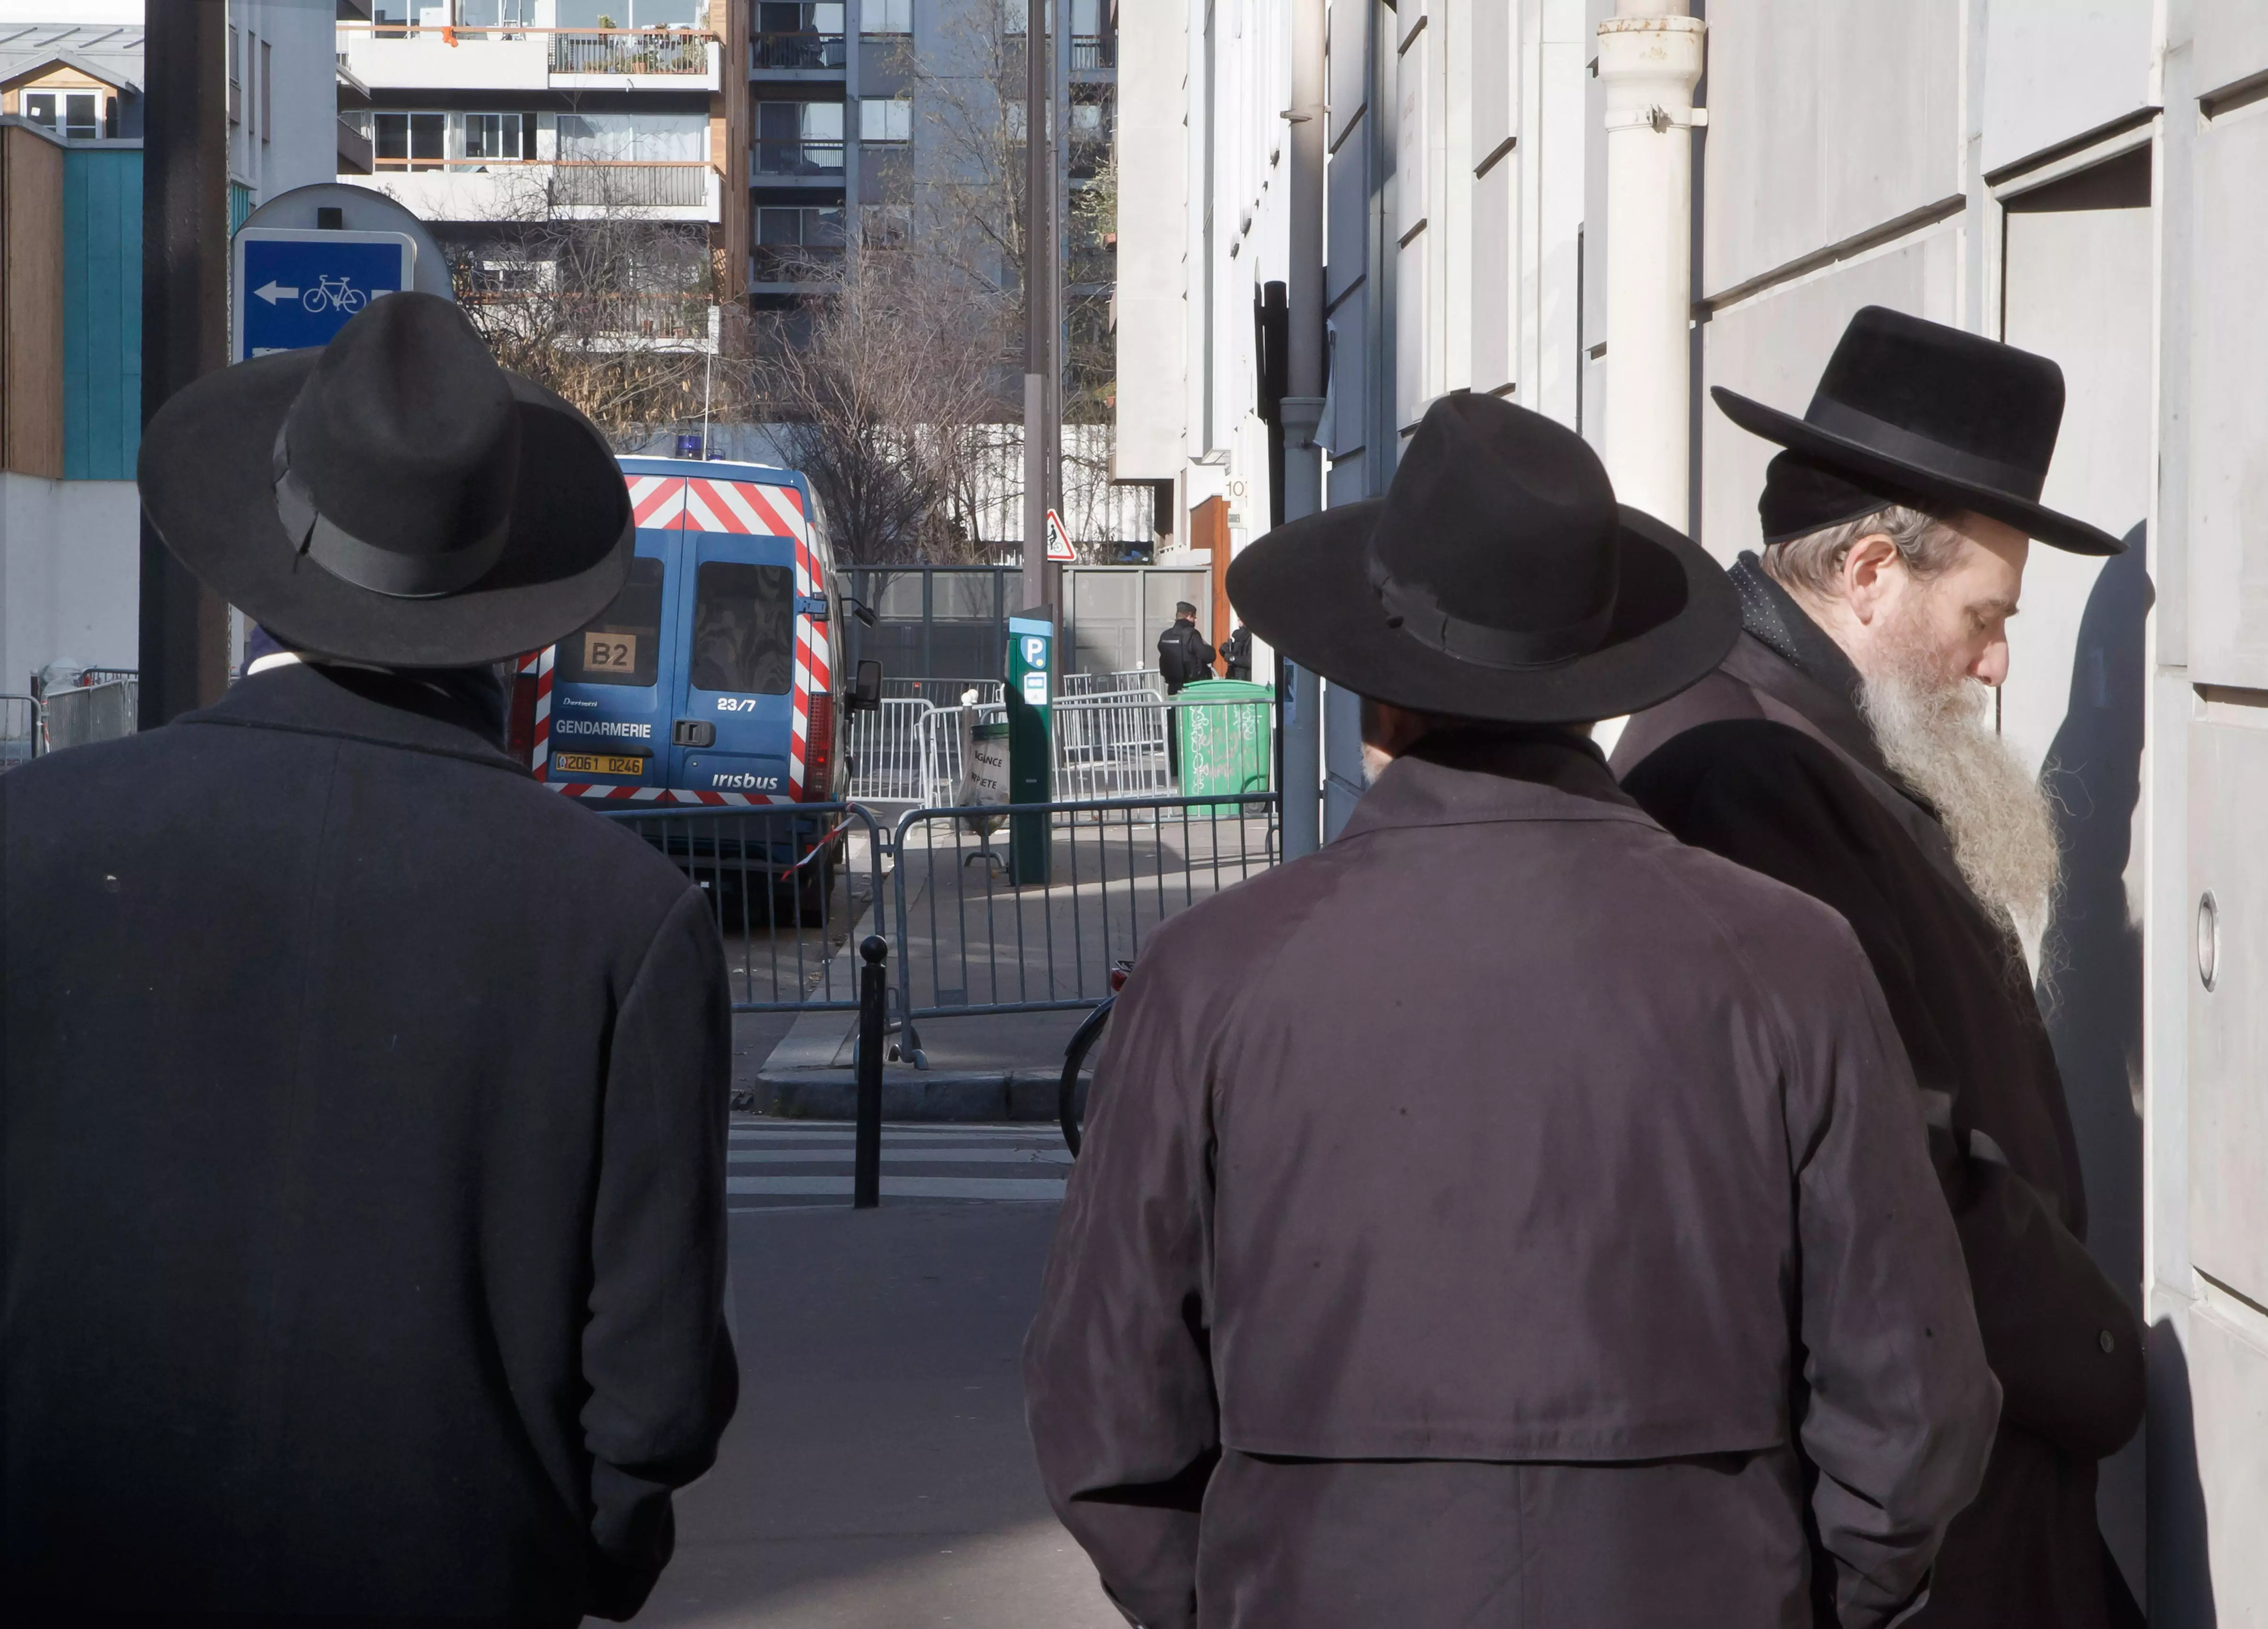 צרפת זקוקה להם". יהודים בביתם שבפריז, סמוך למערכת העיתון "שרלי הבדו", שהותקף אף הוא לפני כחודש